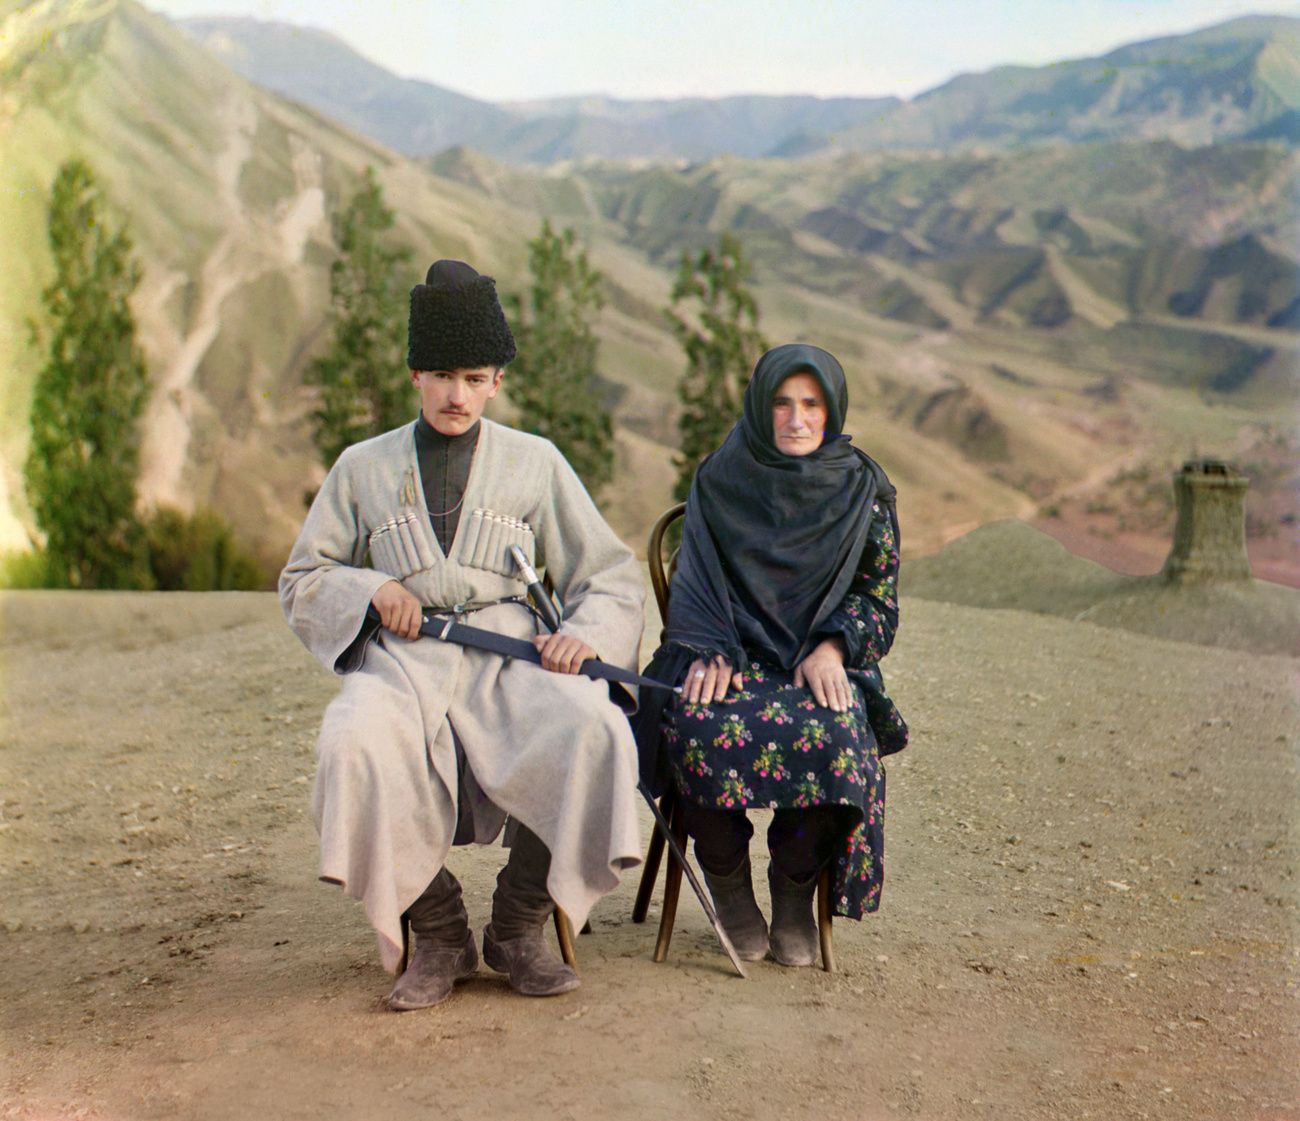 1910. - Dagesztáni férfi és felesége hagyományos népviseletben. 